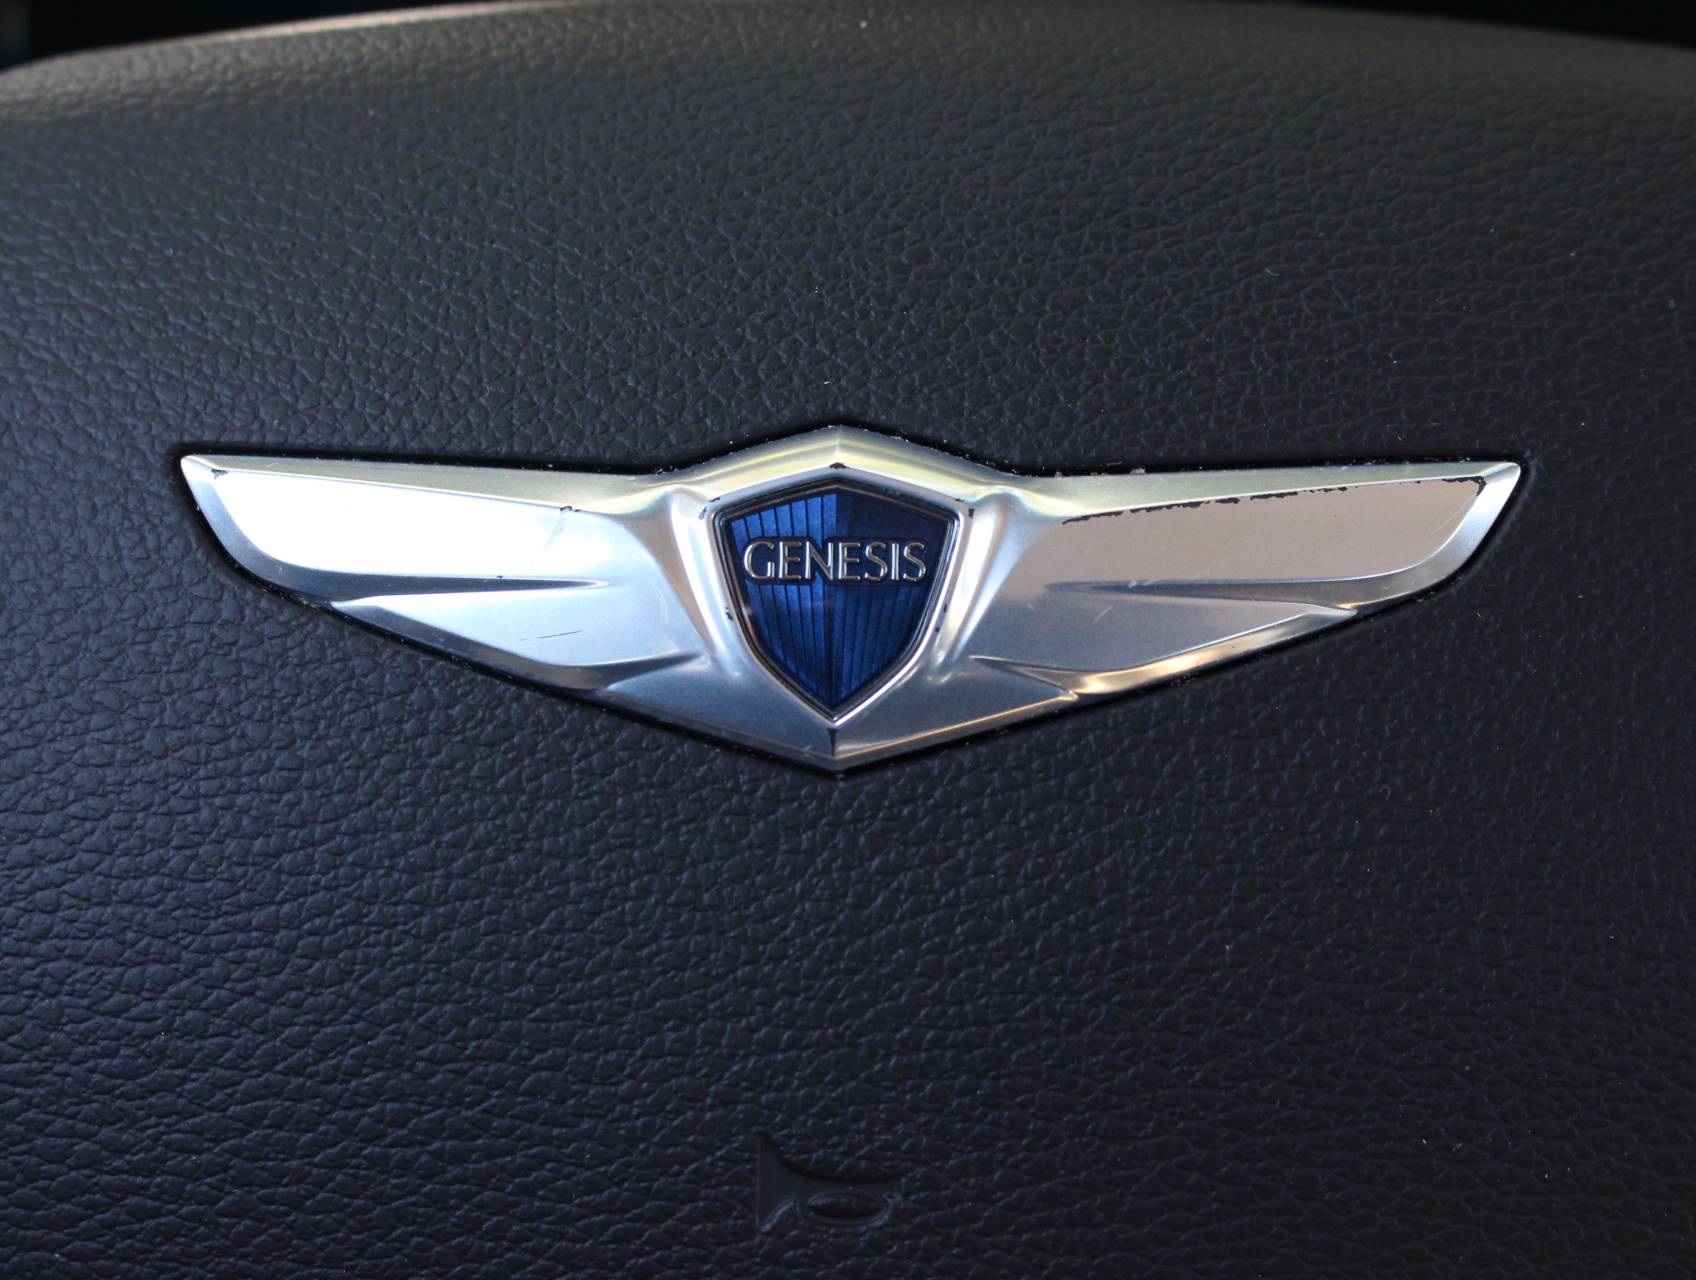 Florida Fine Cars - Used HYUNDAI GENESIS 2015 MIAMI 3.8